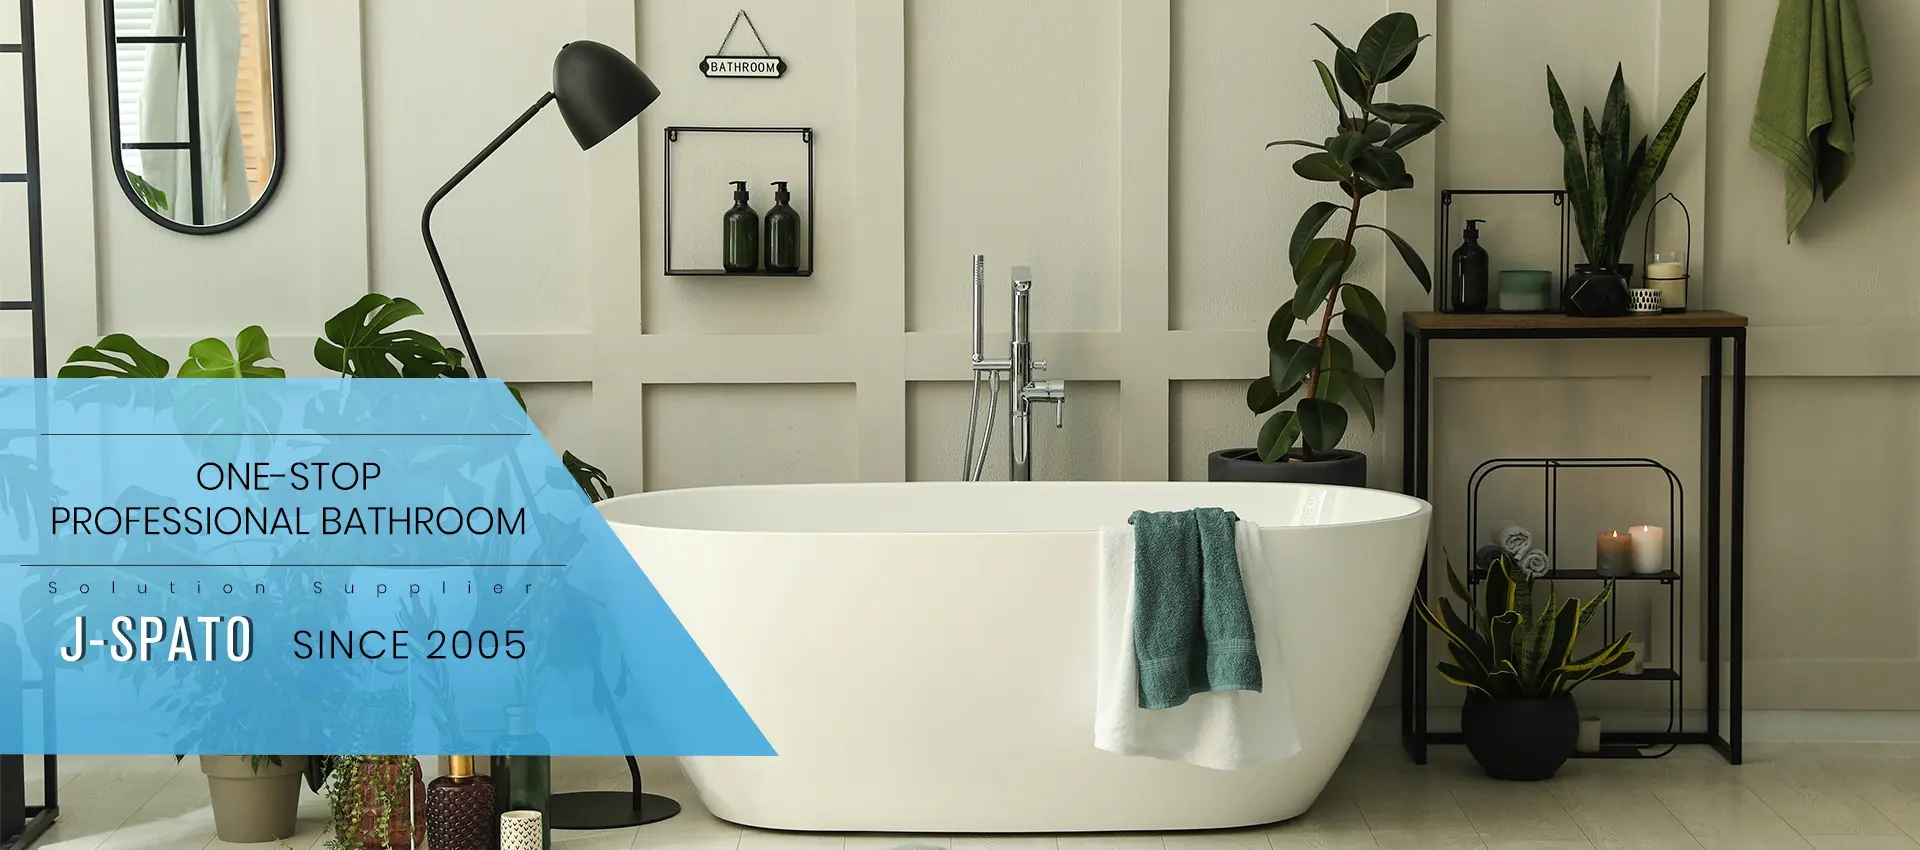 မင်းရဲ့ လွတ်လပ်စွာ ရေချိုးကန်ကို သန့်ရှင်းအောင် ဘယ်လိုထိန်းသိမ်းမလဲ။